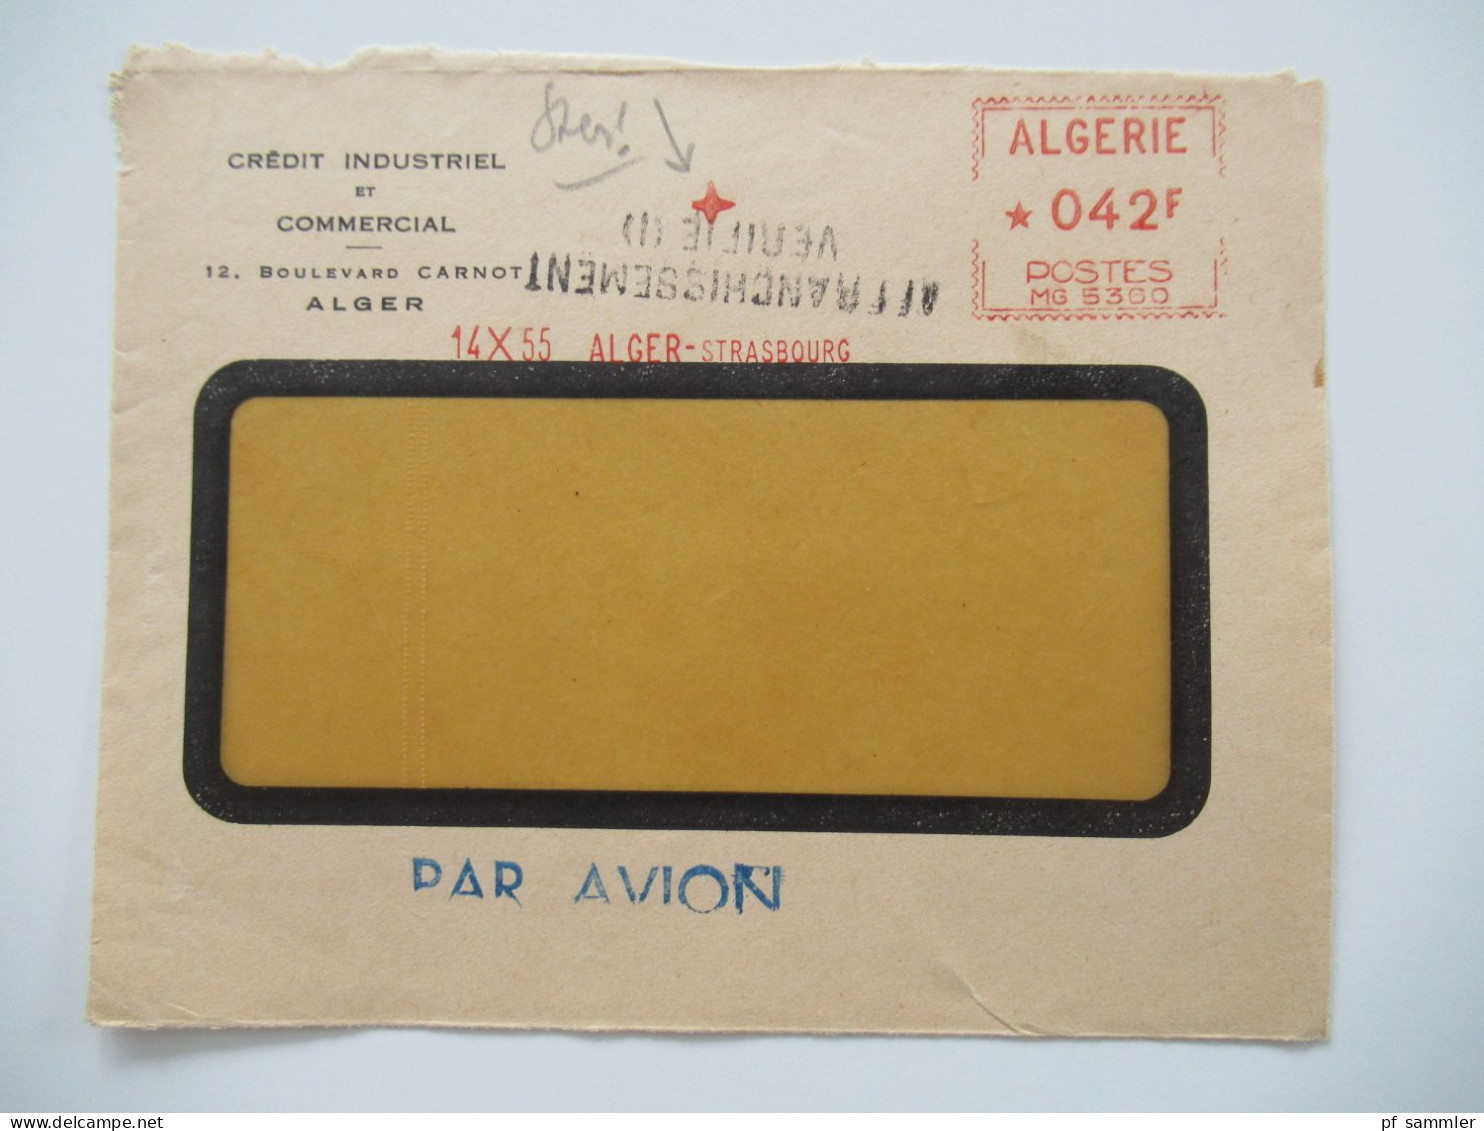 Algerien 1950 / 60er Jahre Belegeposten 50 VS (Vorderseiten) / viele Stempel / AFS Freistempel nach Holland